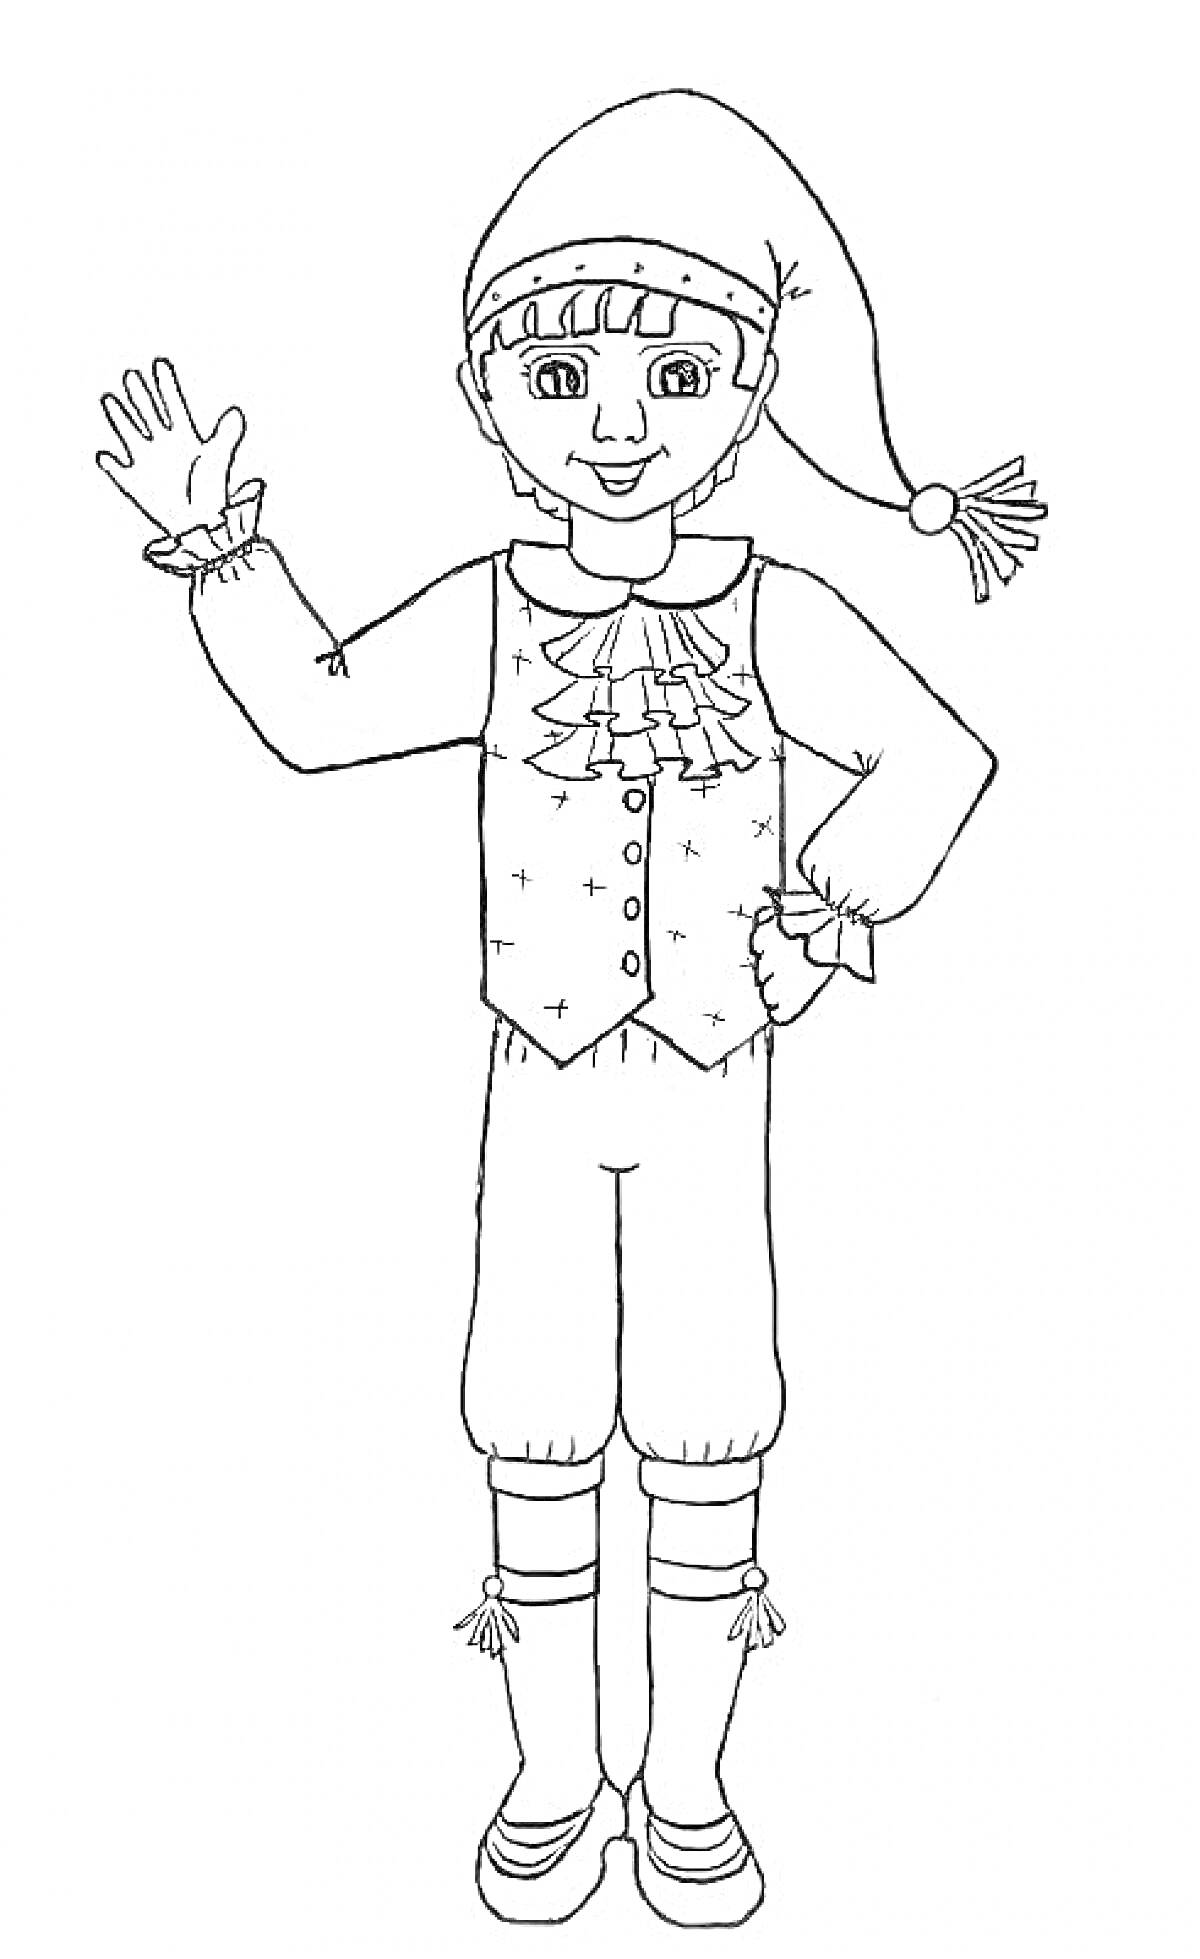 Раскраска Одетый мальчик в новогоднем костюме с жилетом, брюками, ботинками и шапкой с кисточкой, поднимает руку